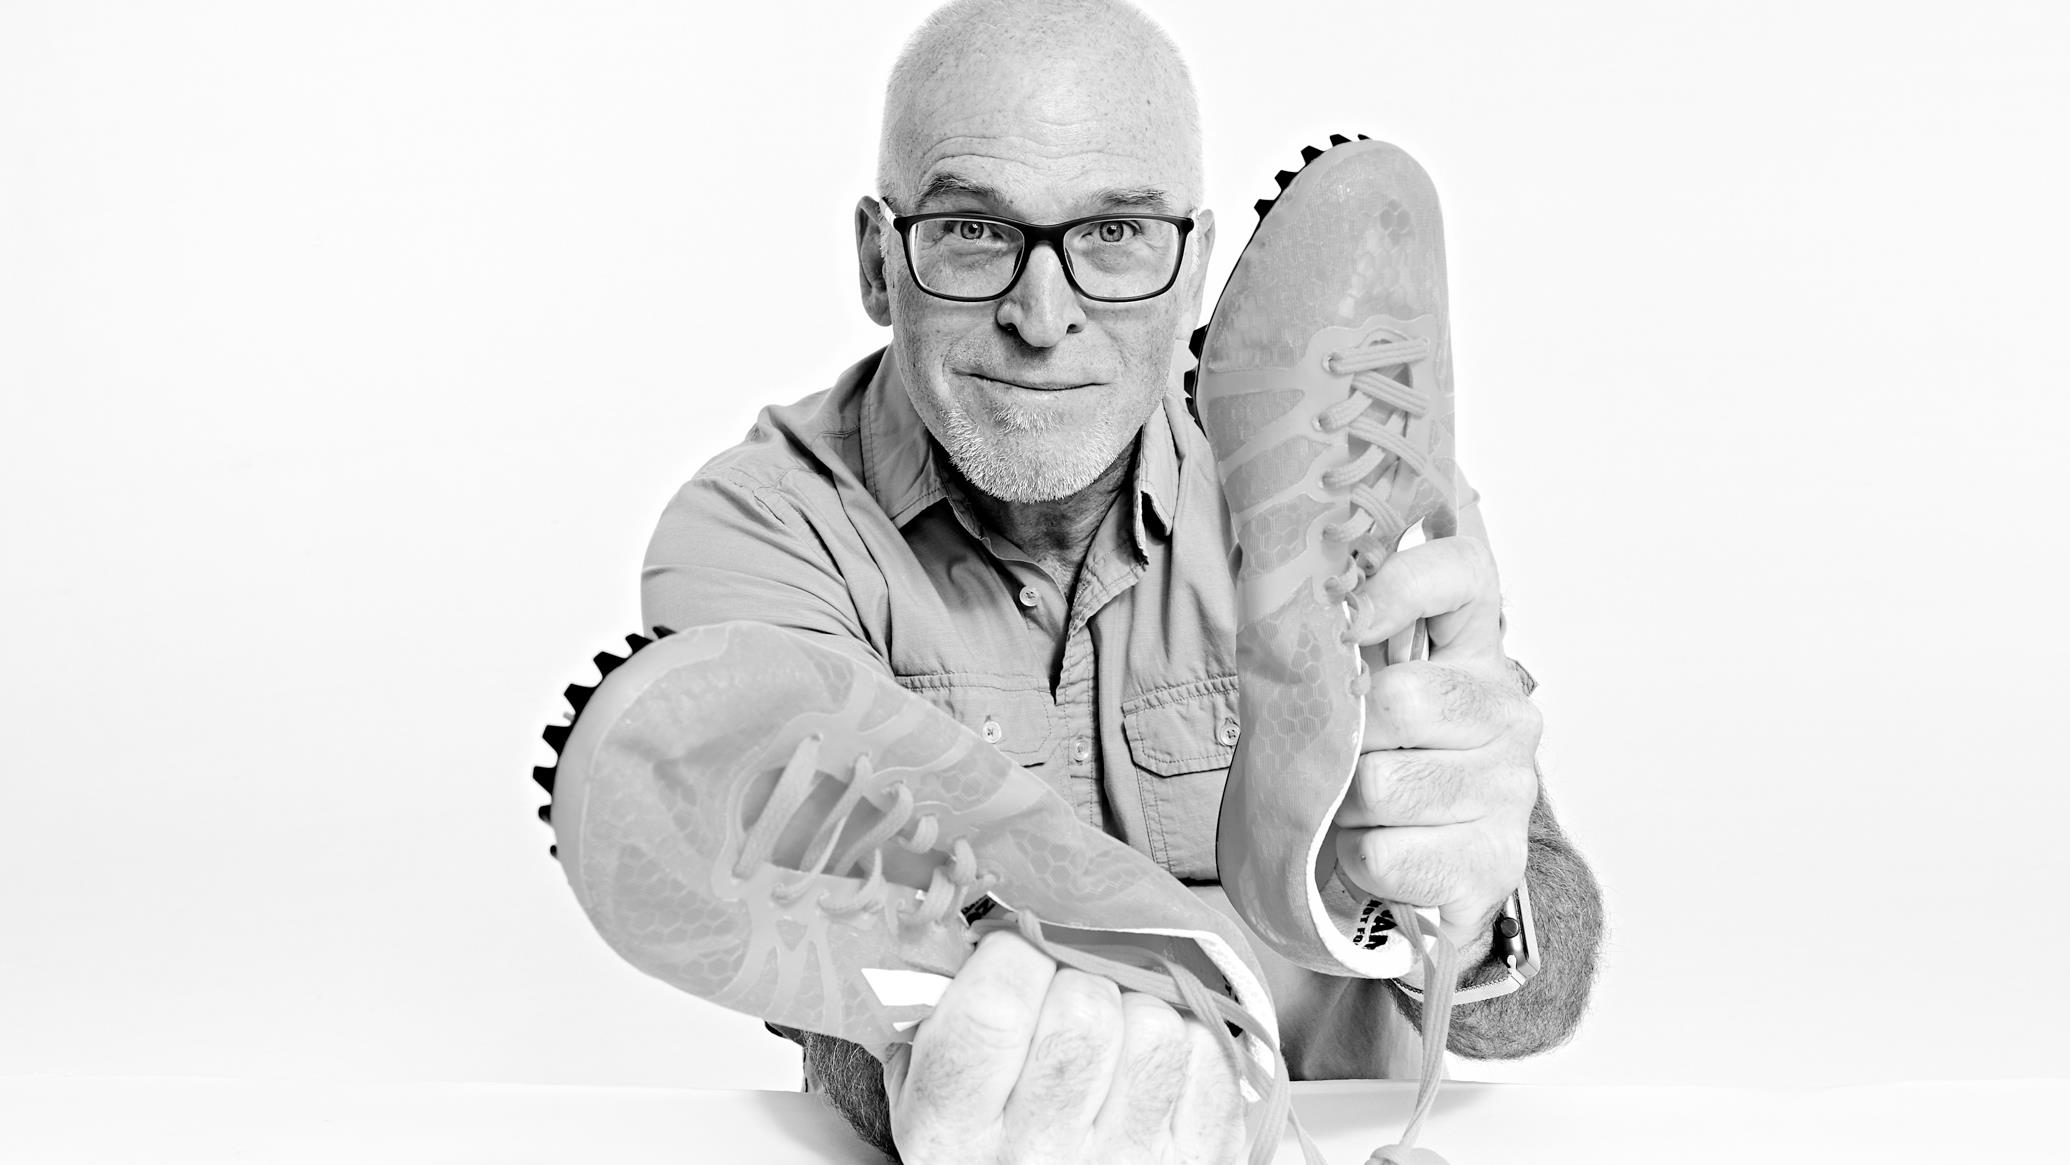 30 ans au service du design de chaussures chez Adidas
30 ans au service du design de chaussures chez Adidas